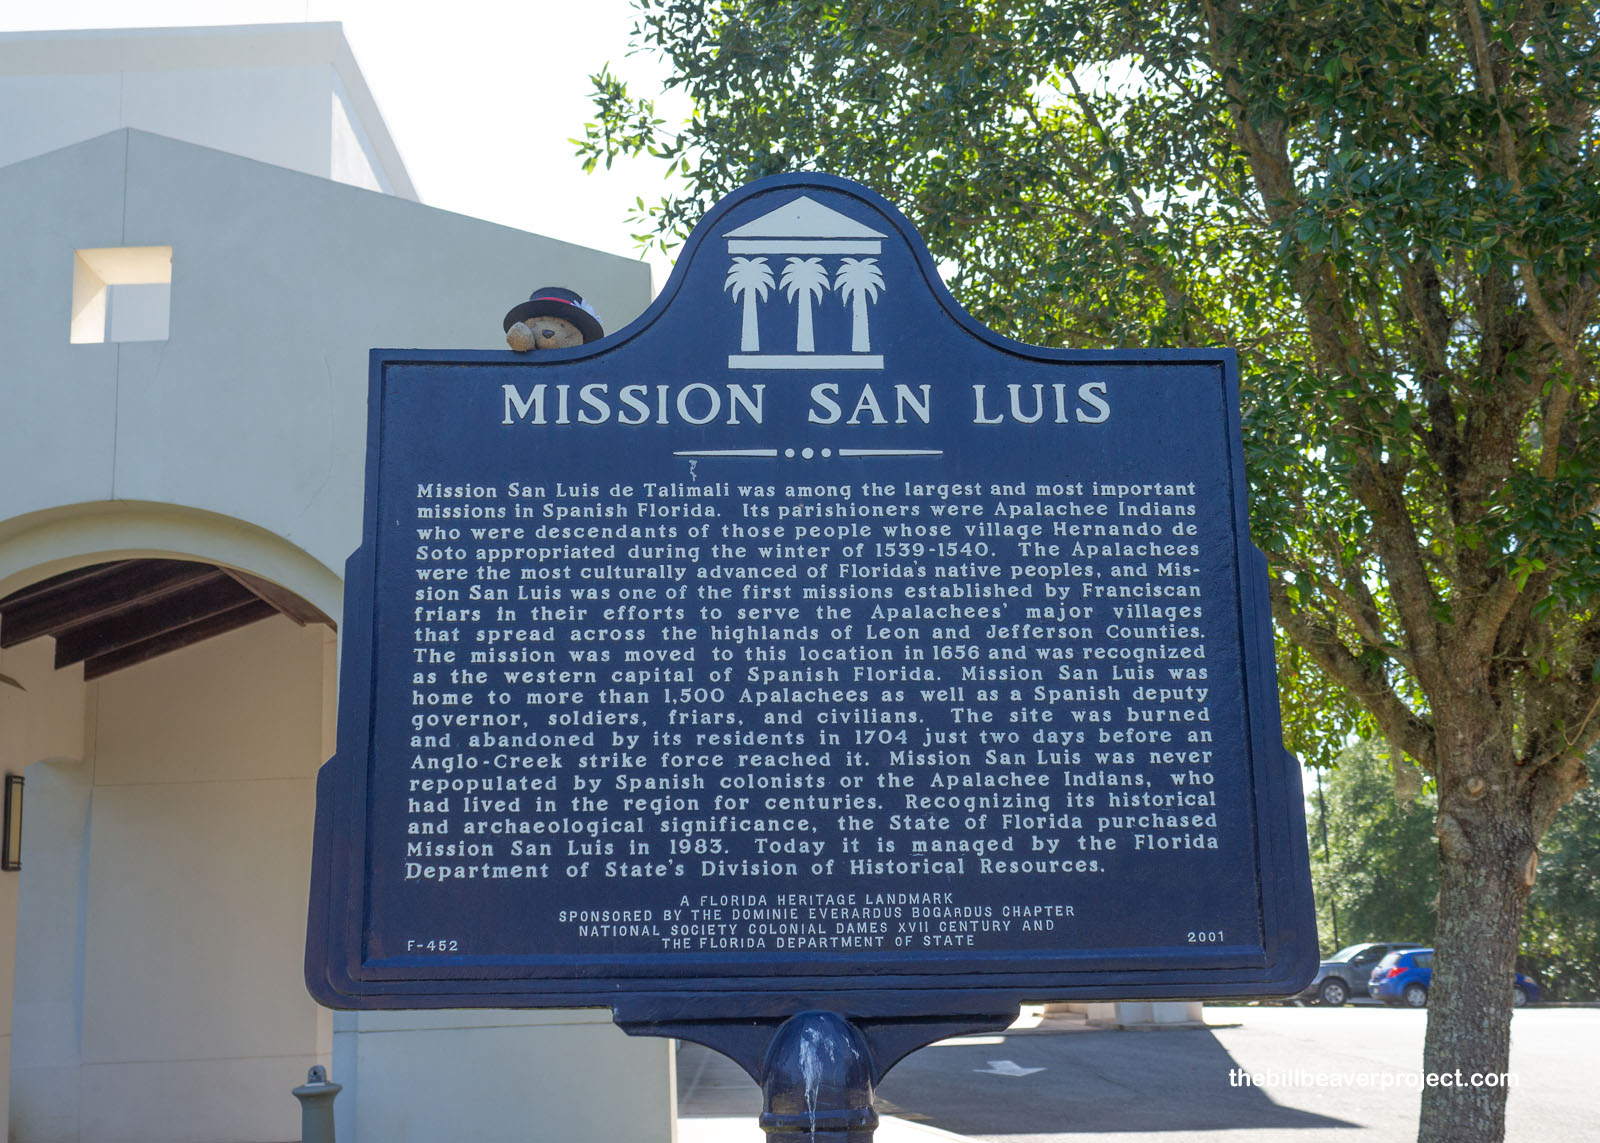 Mission San Luis de Talimali